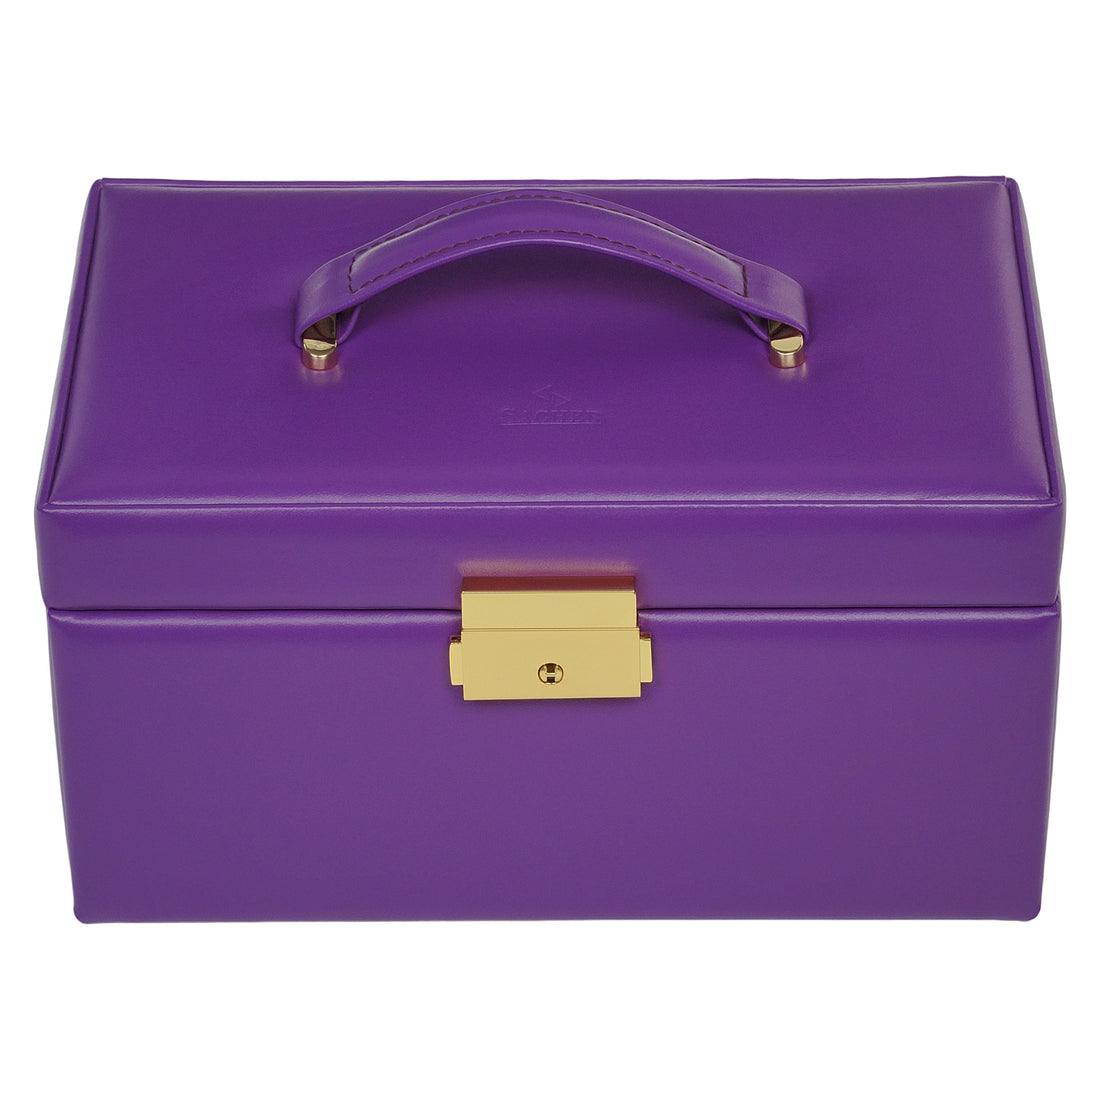 Caixa para jóias Emma colisimo / violeta (pele de vaca)